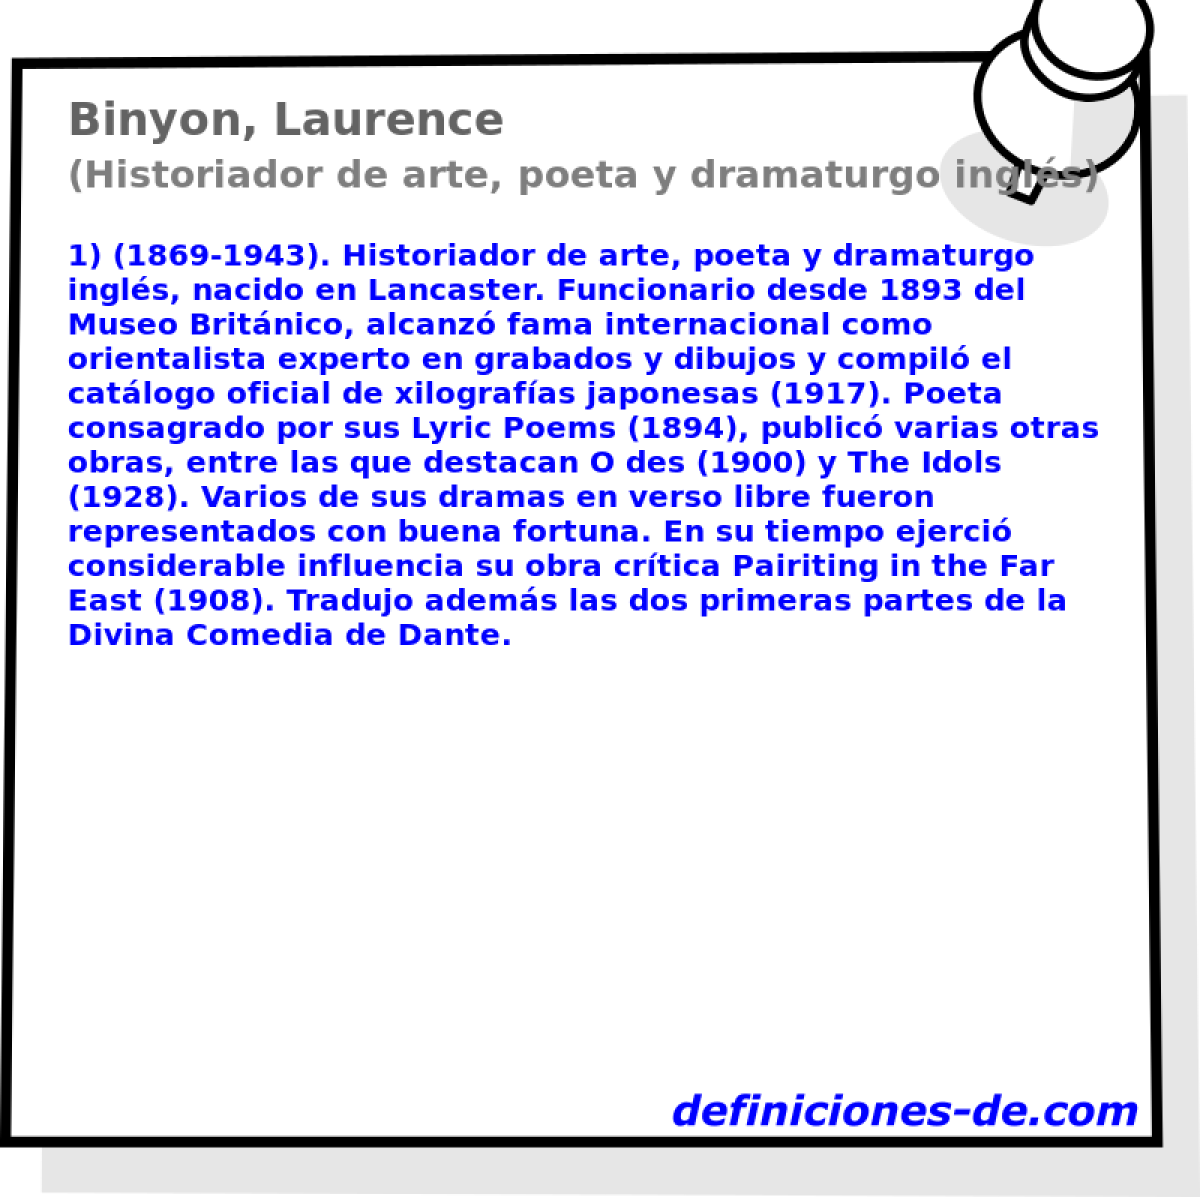 Binyon, Laurence (Historiador de arte, poeta y dramaturgo ingls)